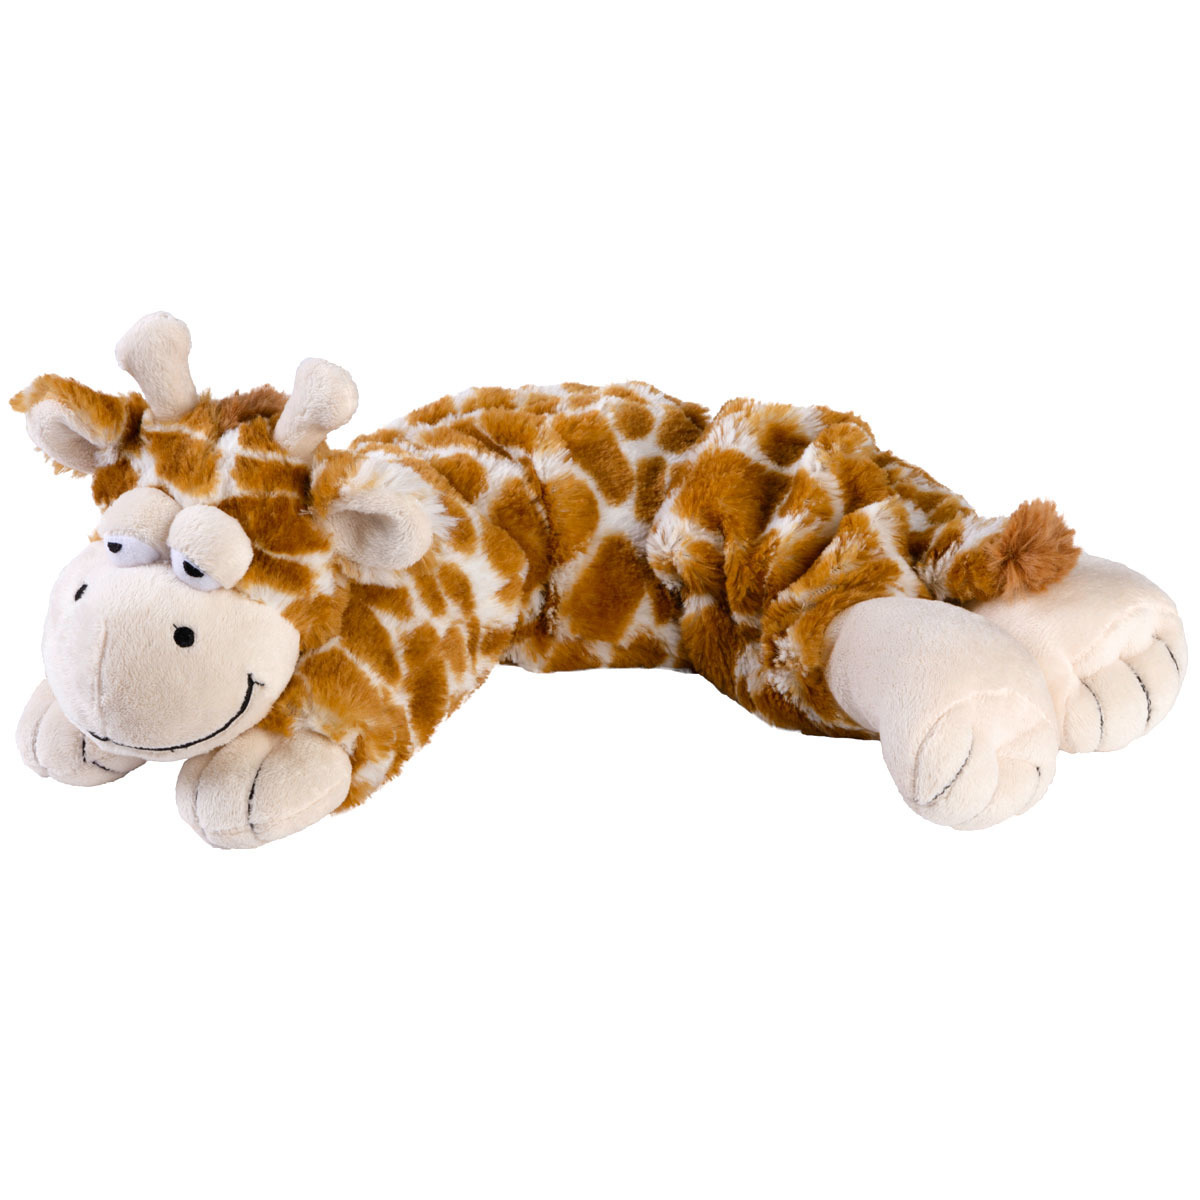 Warmteknuffel giraf geel 50 cm knuffels kopen